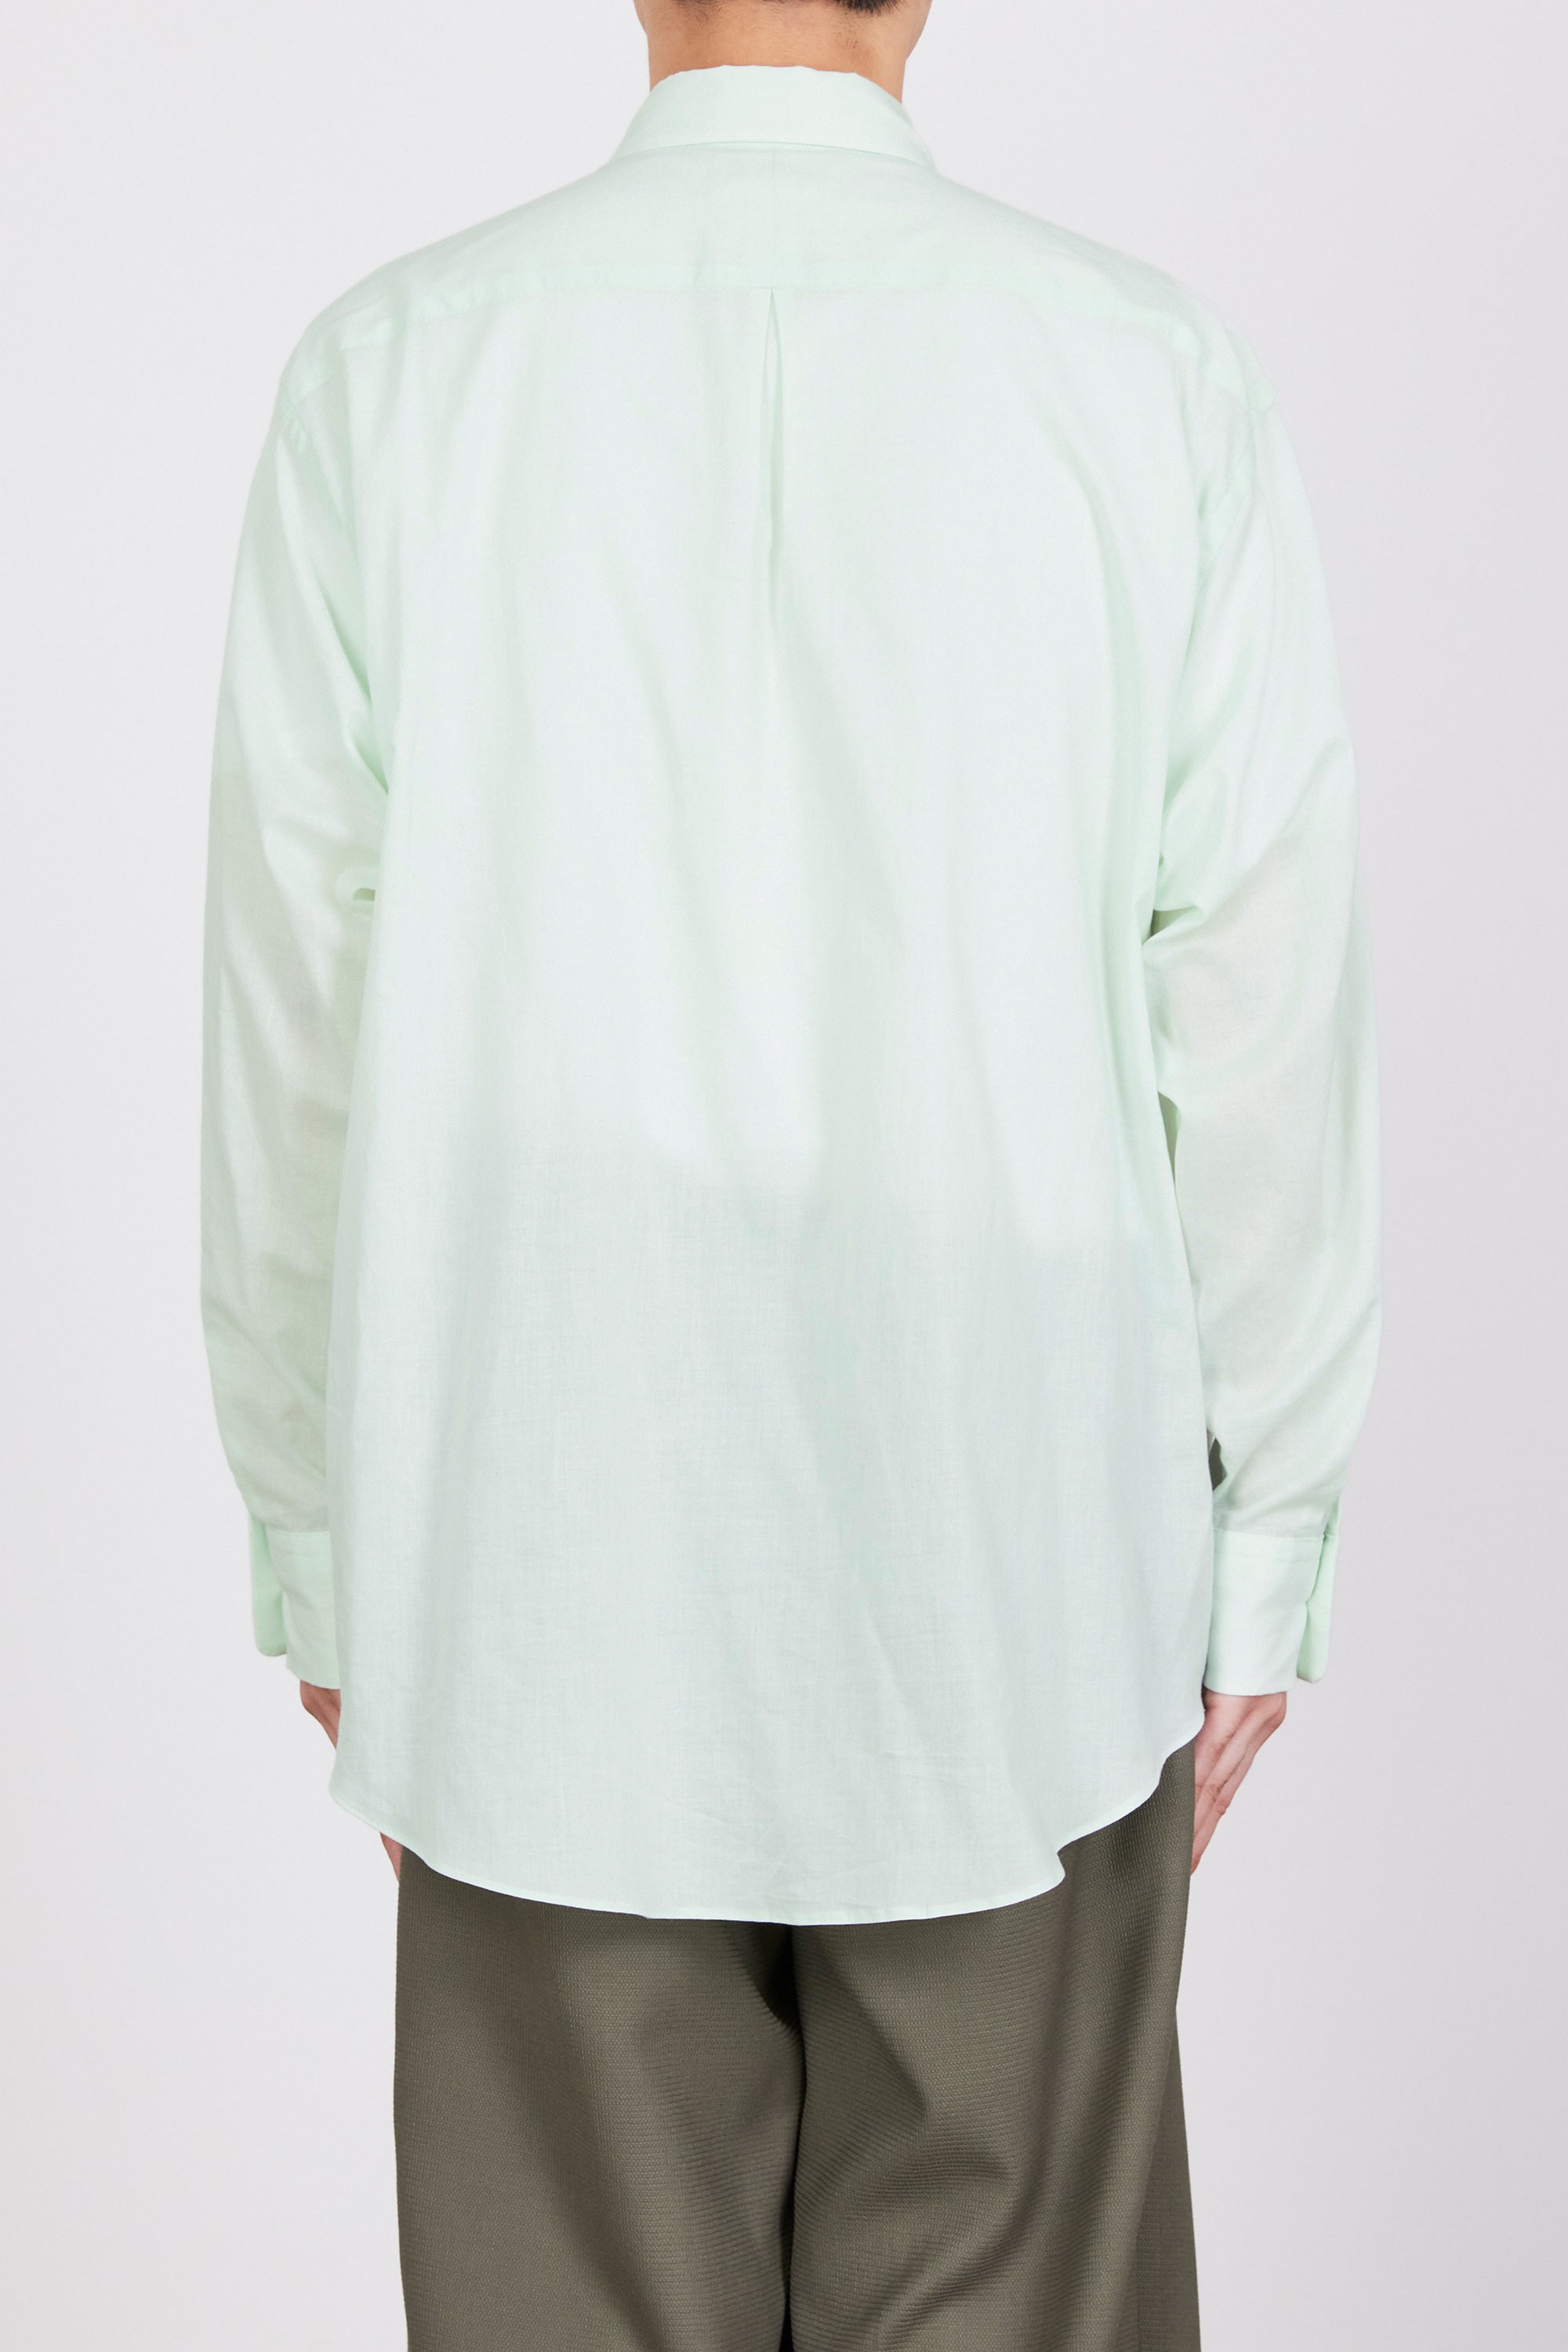 オーガニックペルーピマコットン60/-ローン / コンフォートフィットシャツ, Green